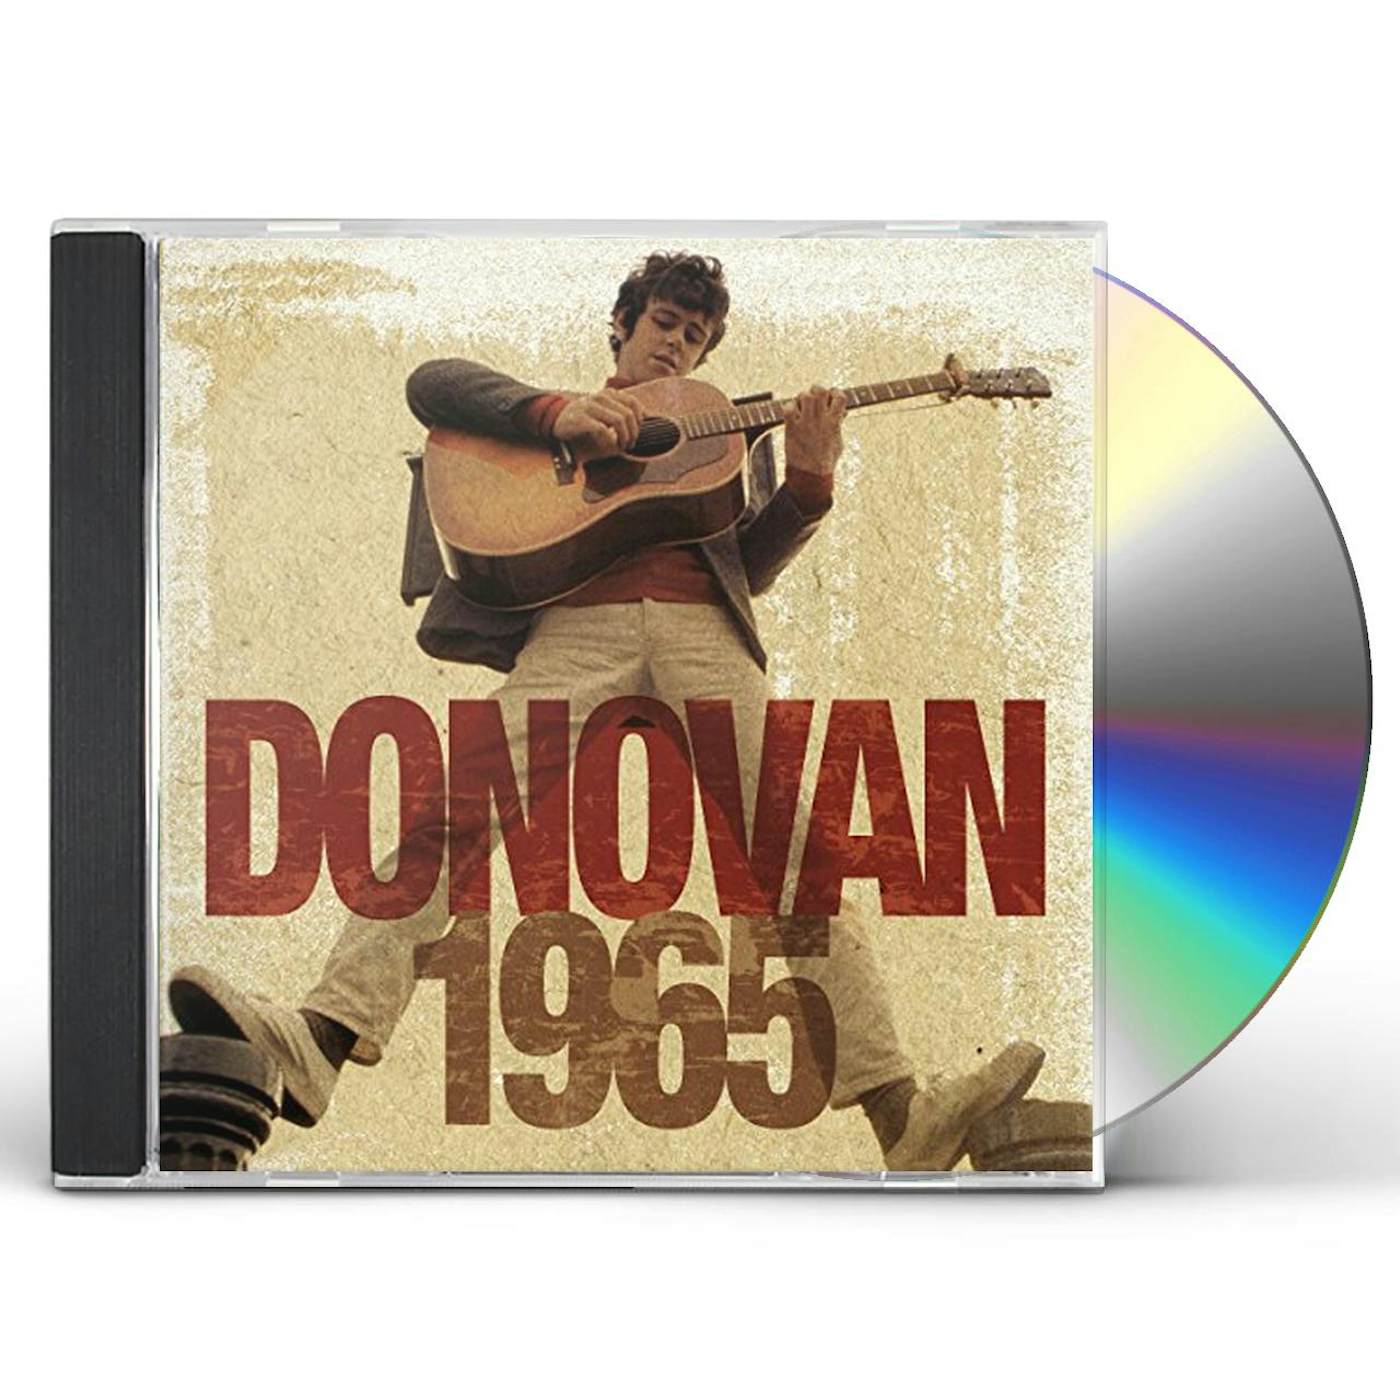 Donovan 1965 CD